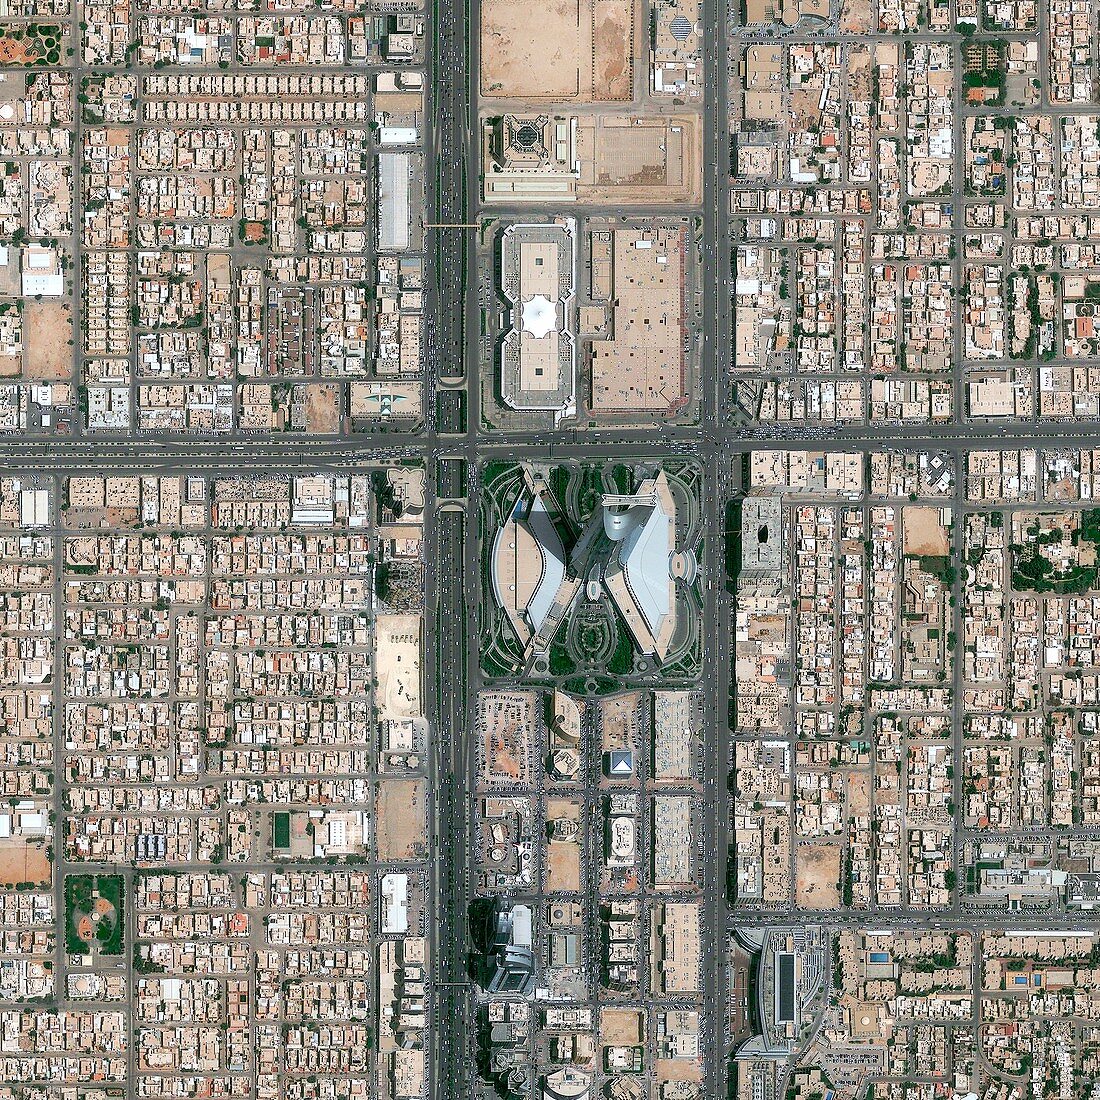 Riyadh,Saudi Arabia,satellite image